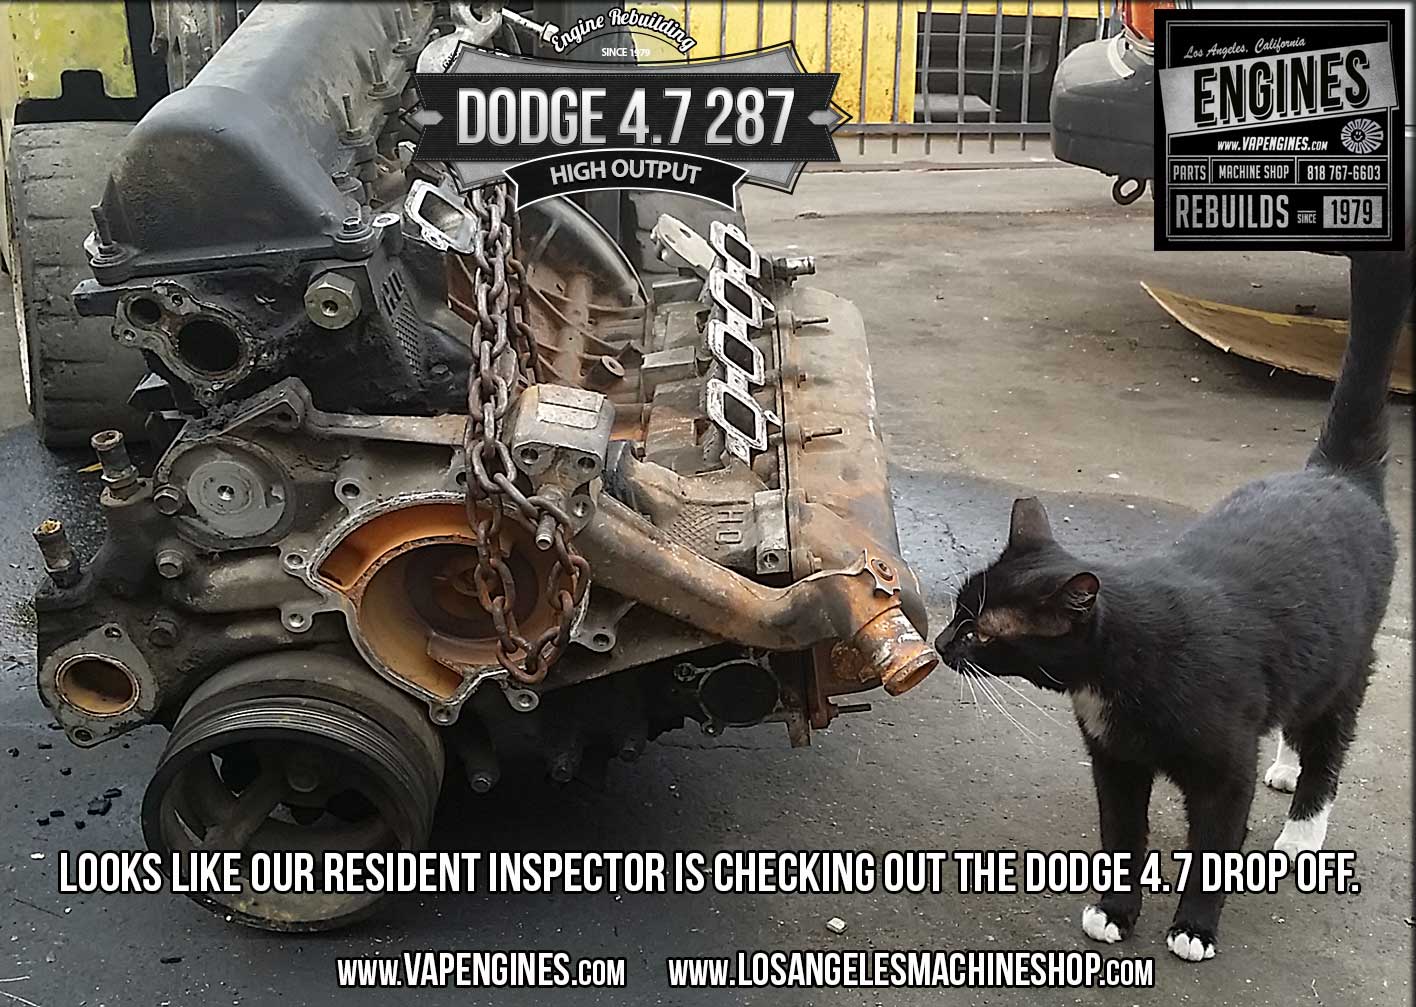 Dodge 4.7 engine inspection